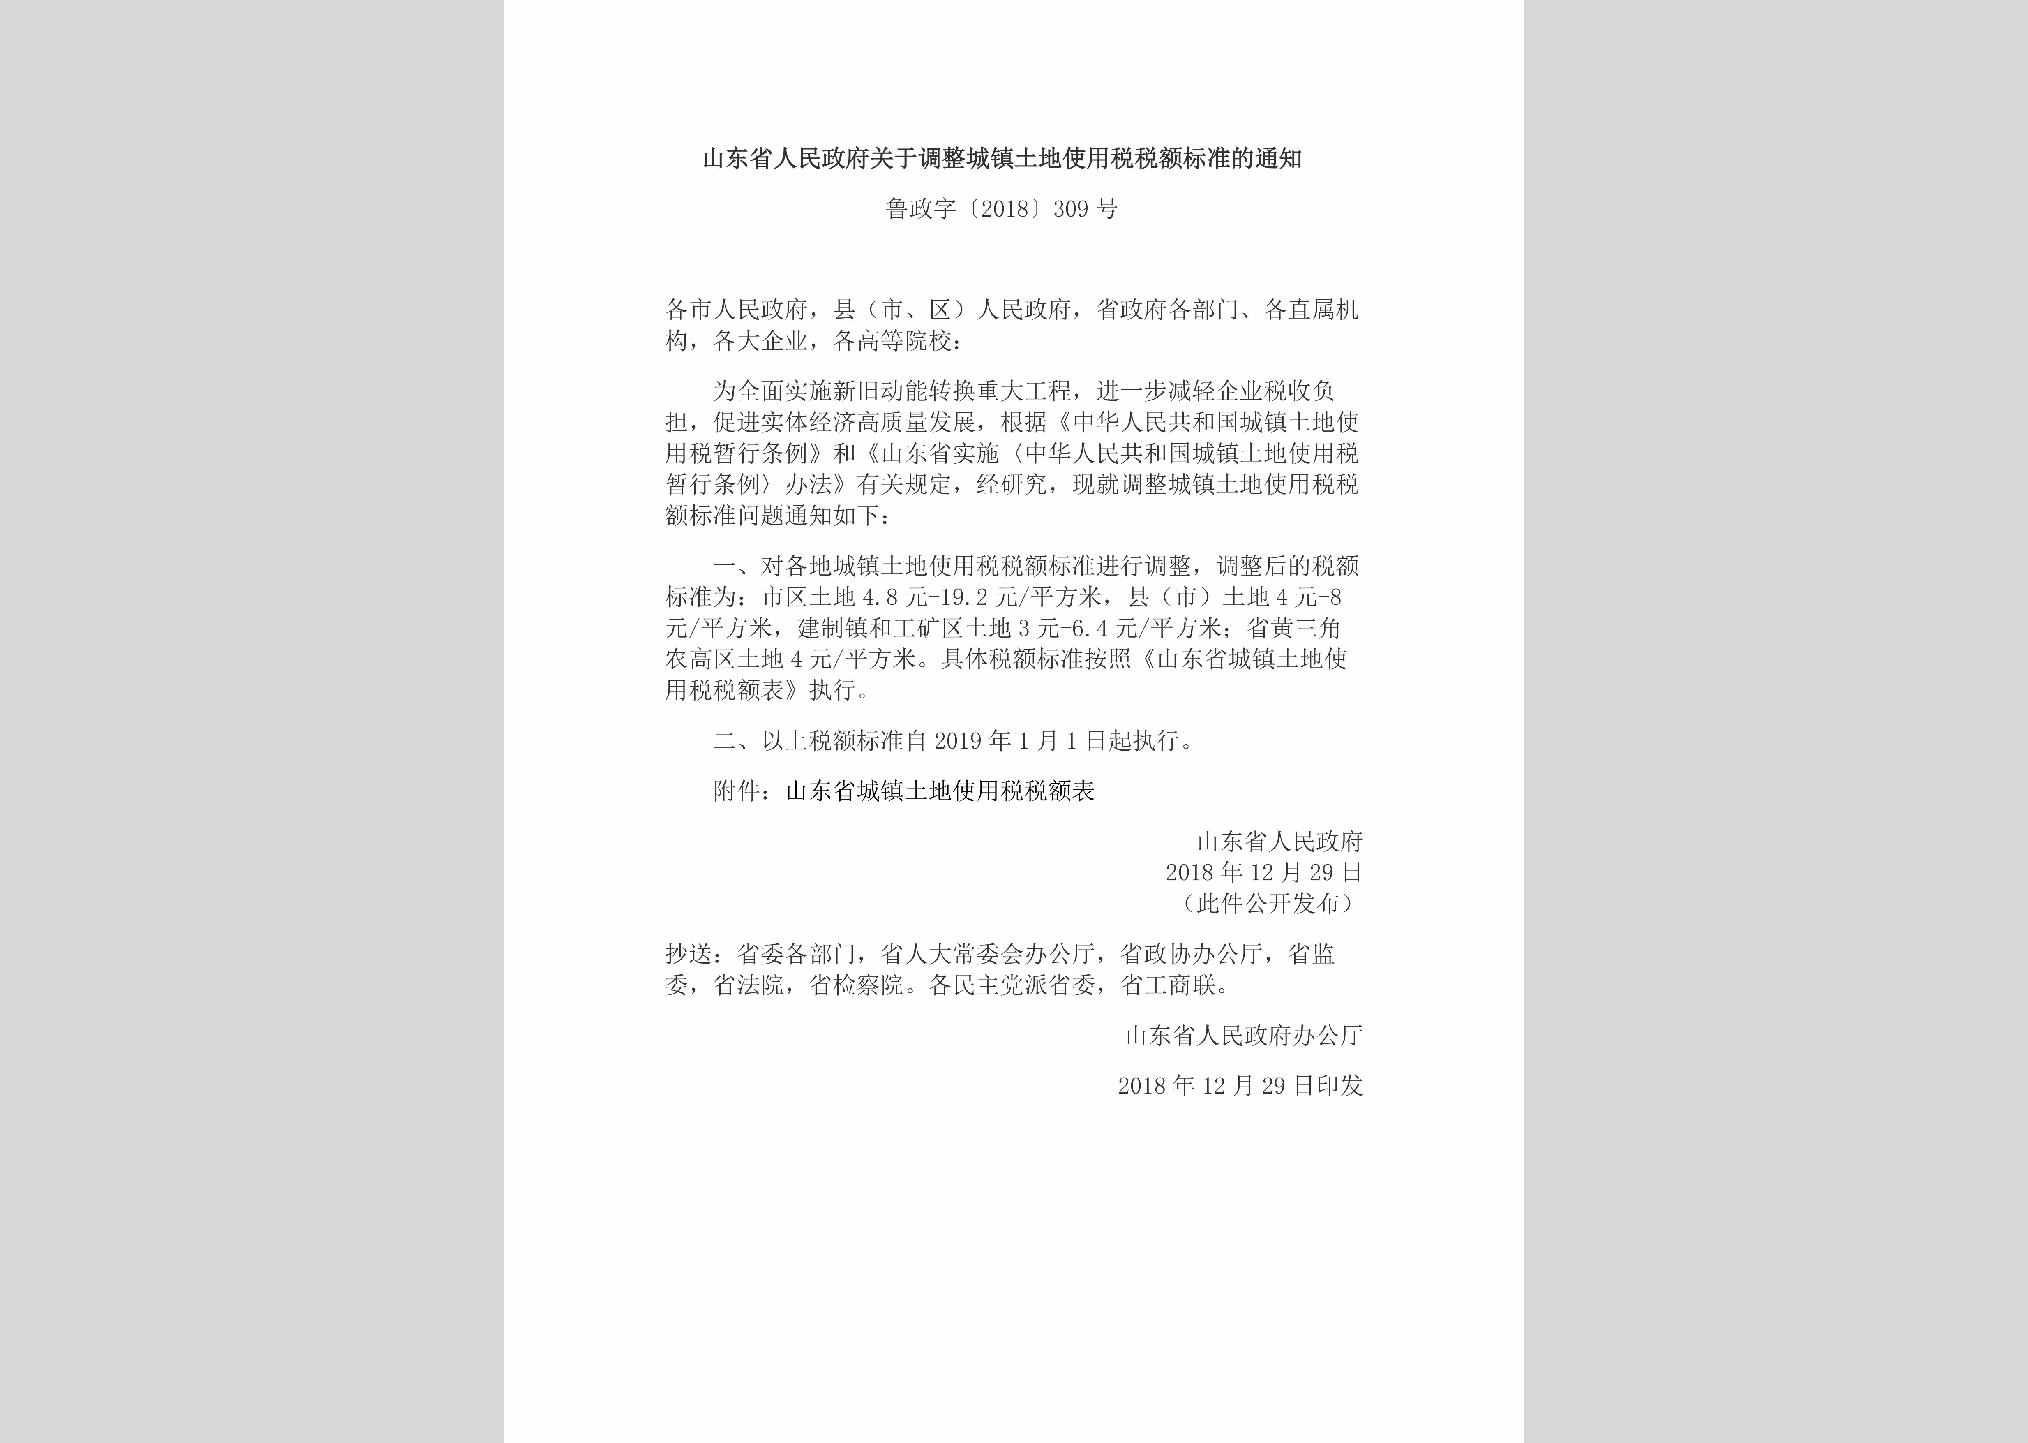 鲁政字[2018]309号：山东省人民政府关于调整城镇土地使用税税额标准的通知